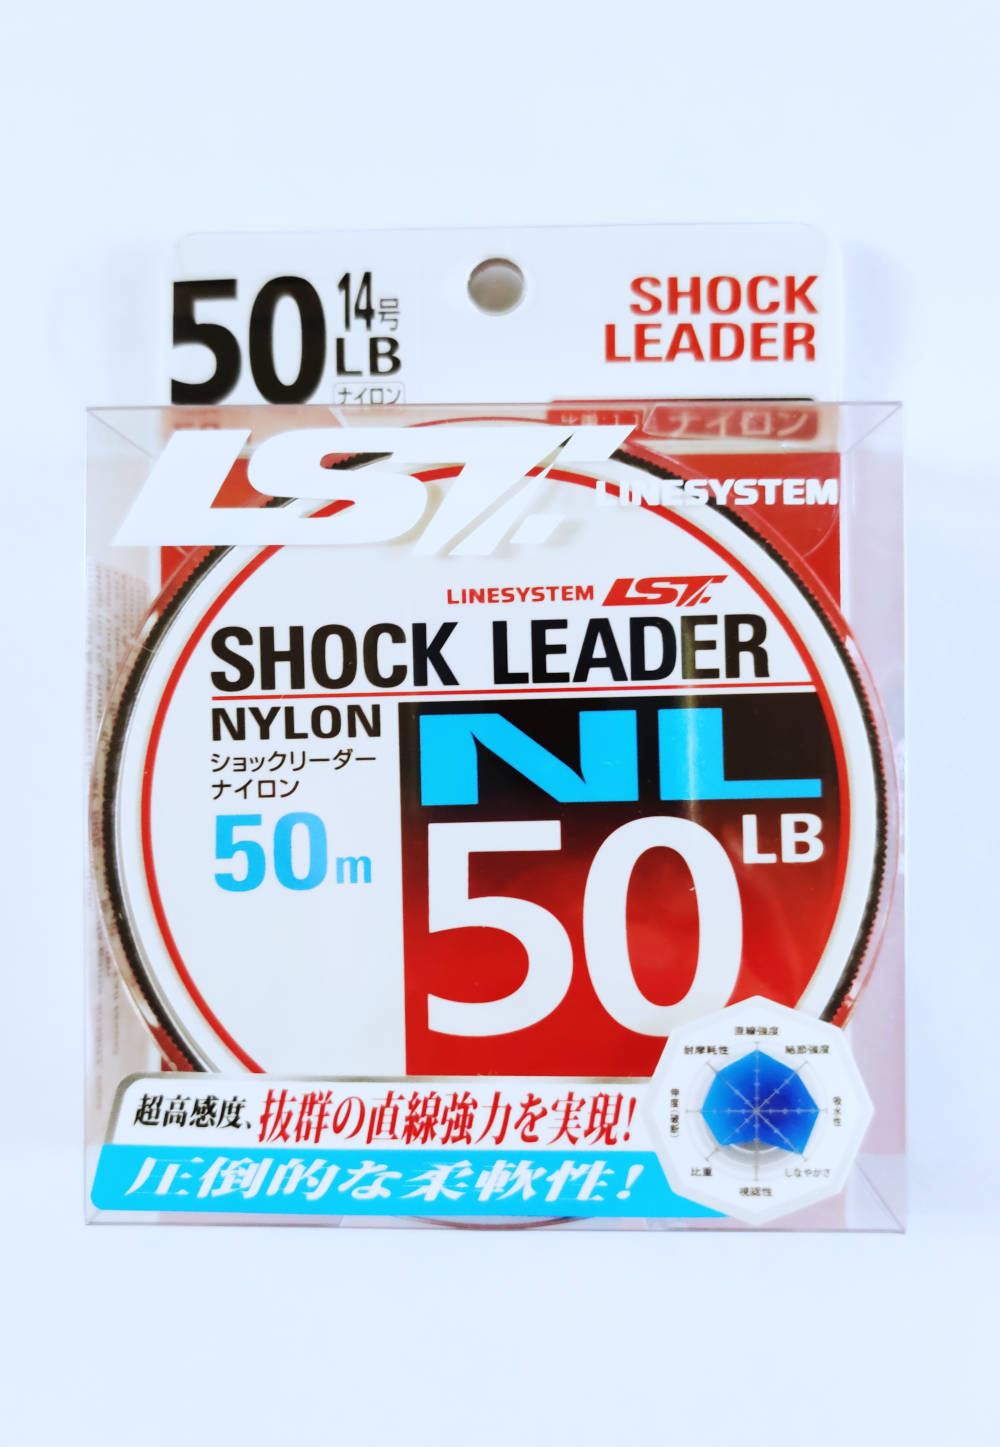 Shock Leader, Nylon shock leader lines in Goa